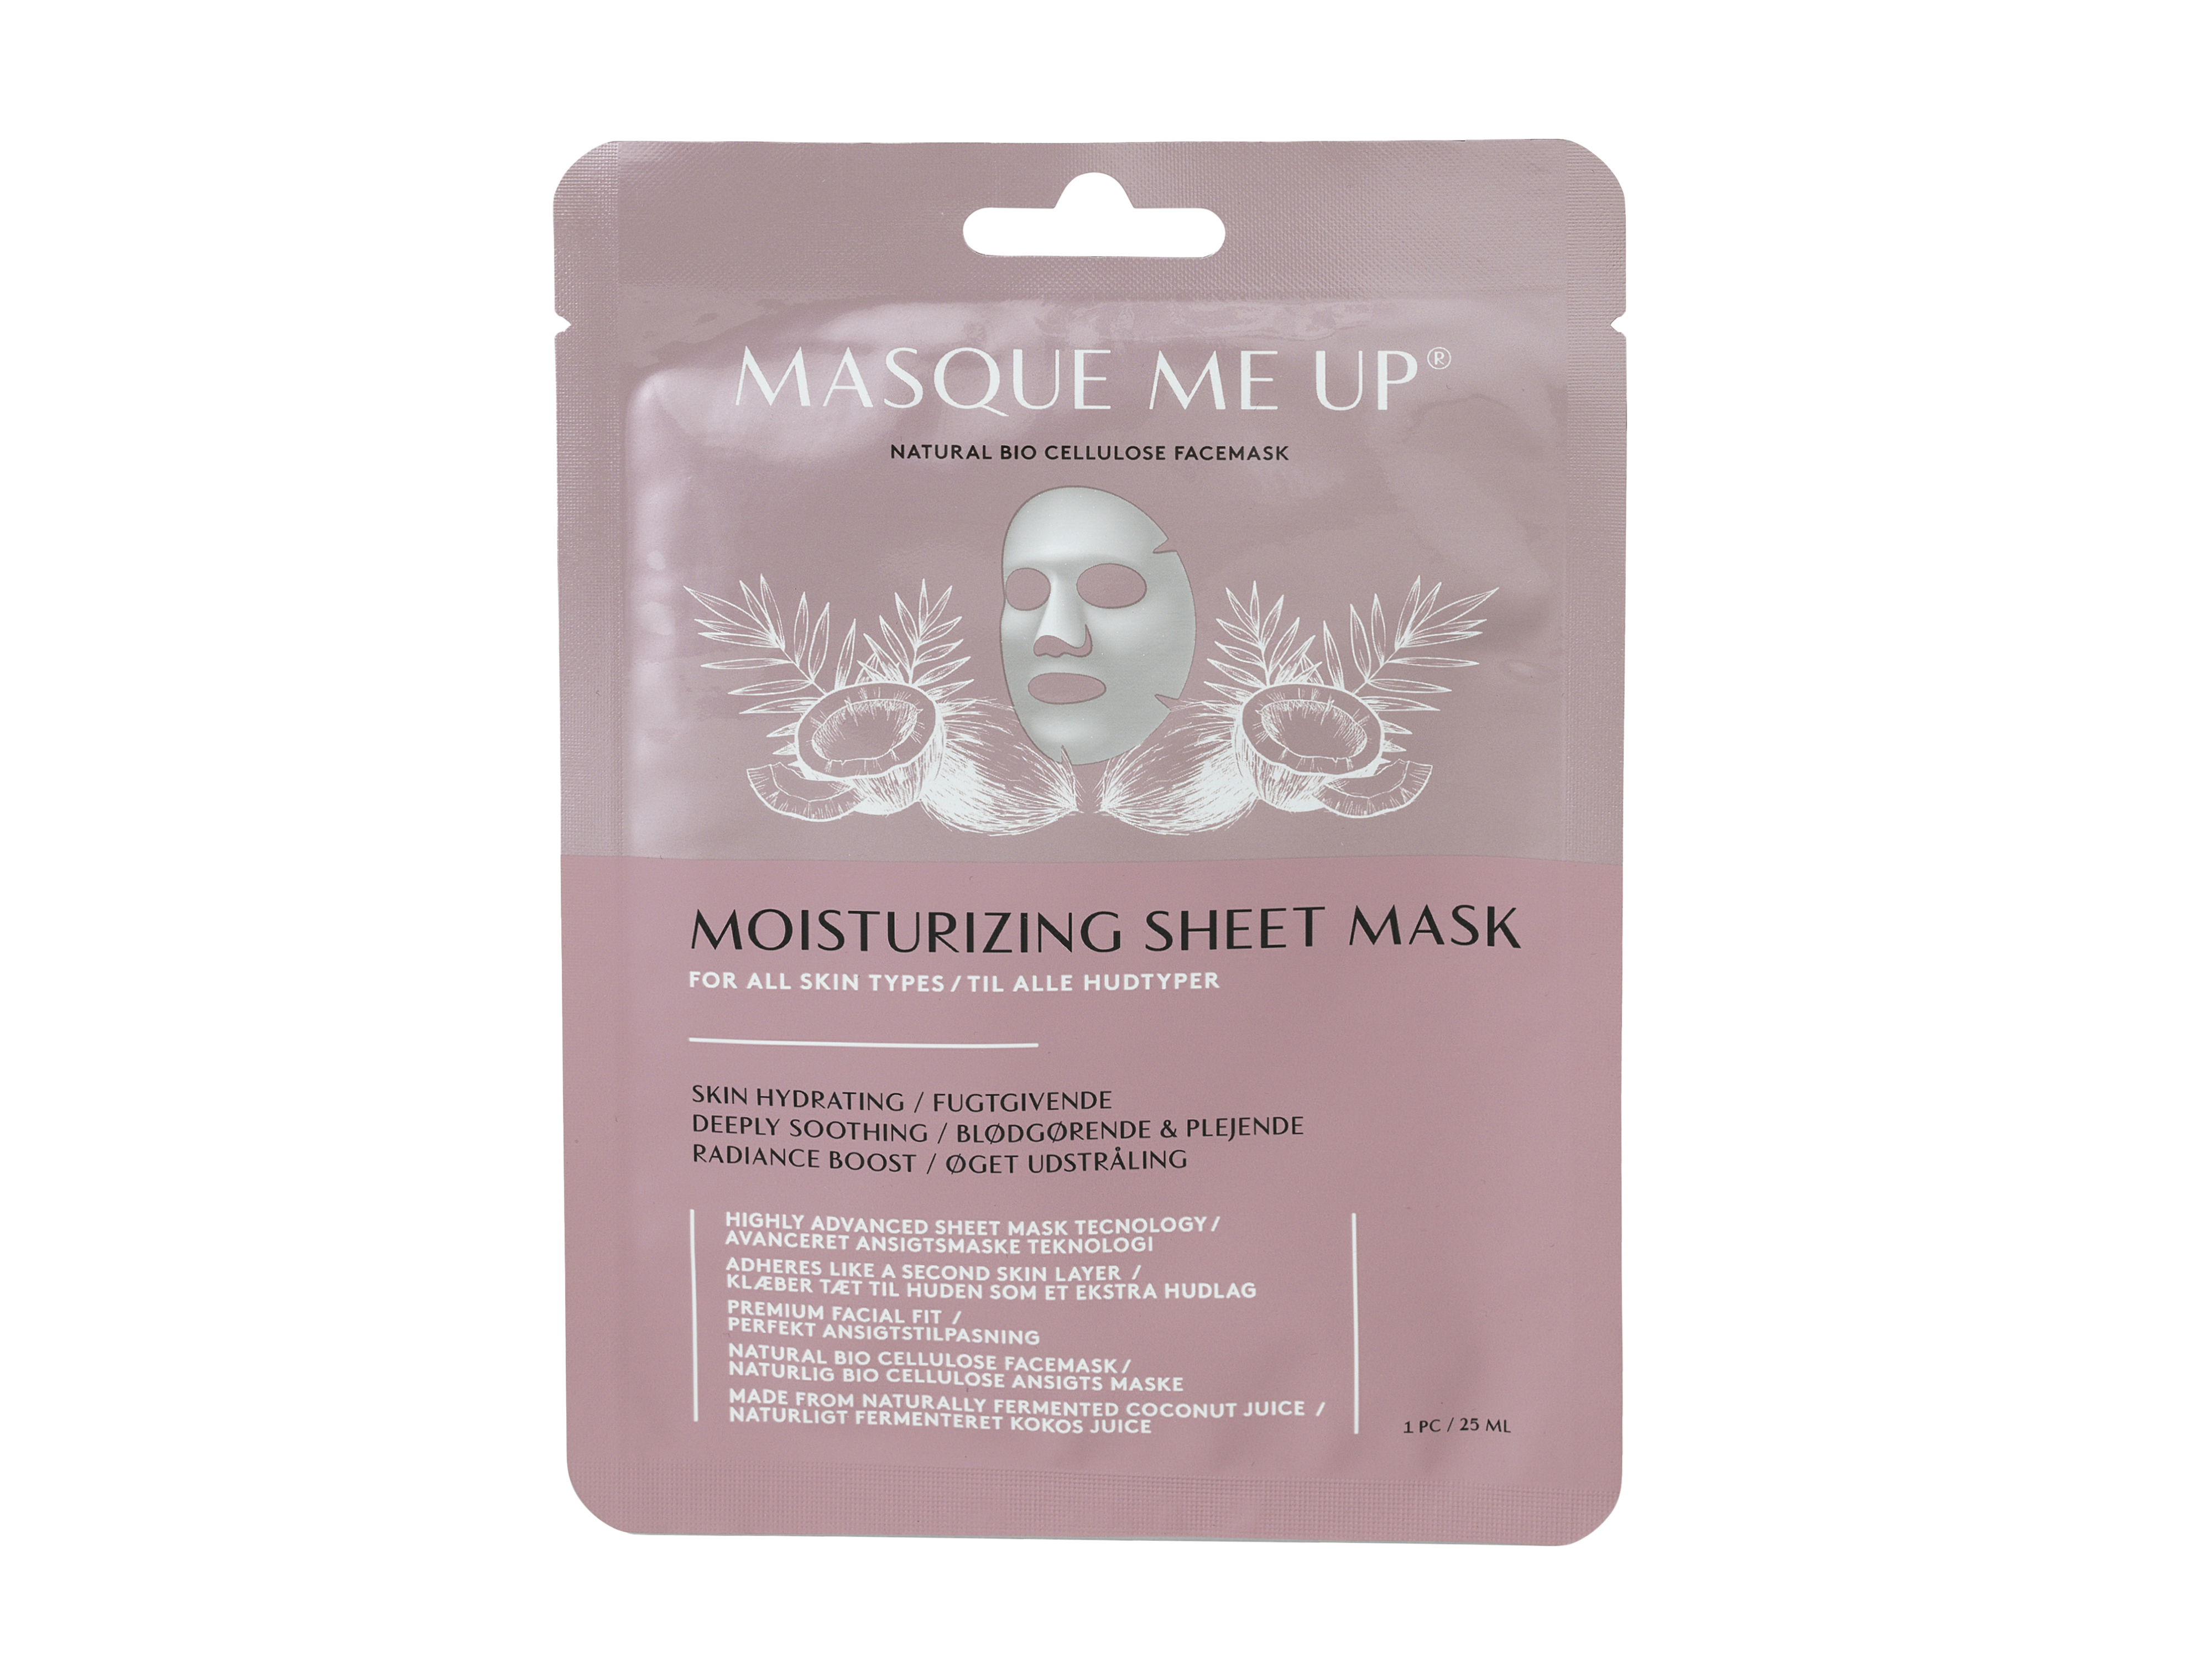 Masque Me Up Moisturizing Sheet Mask, 25 ml